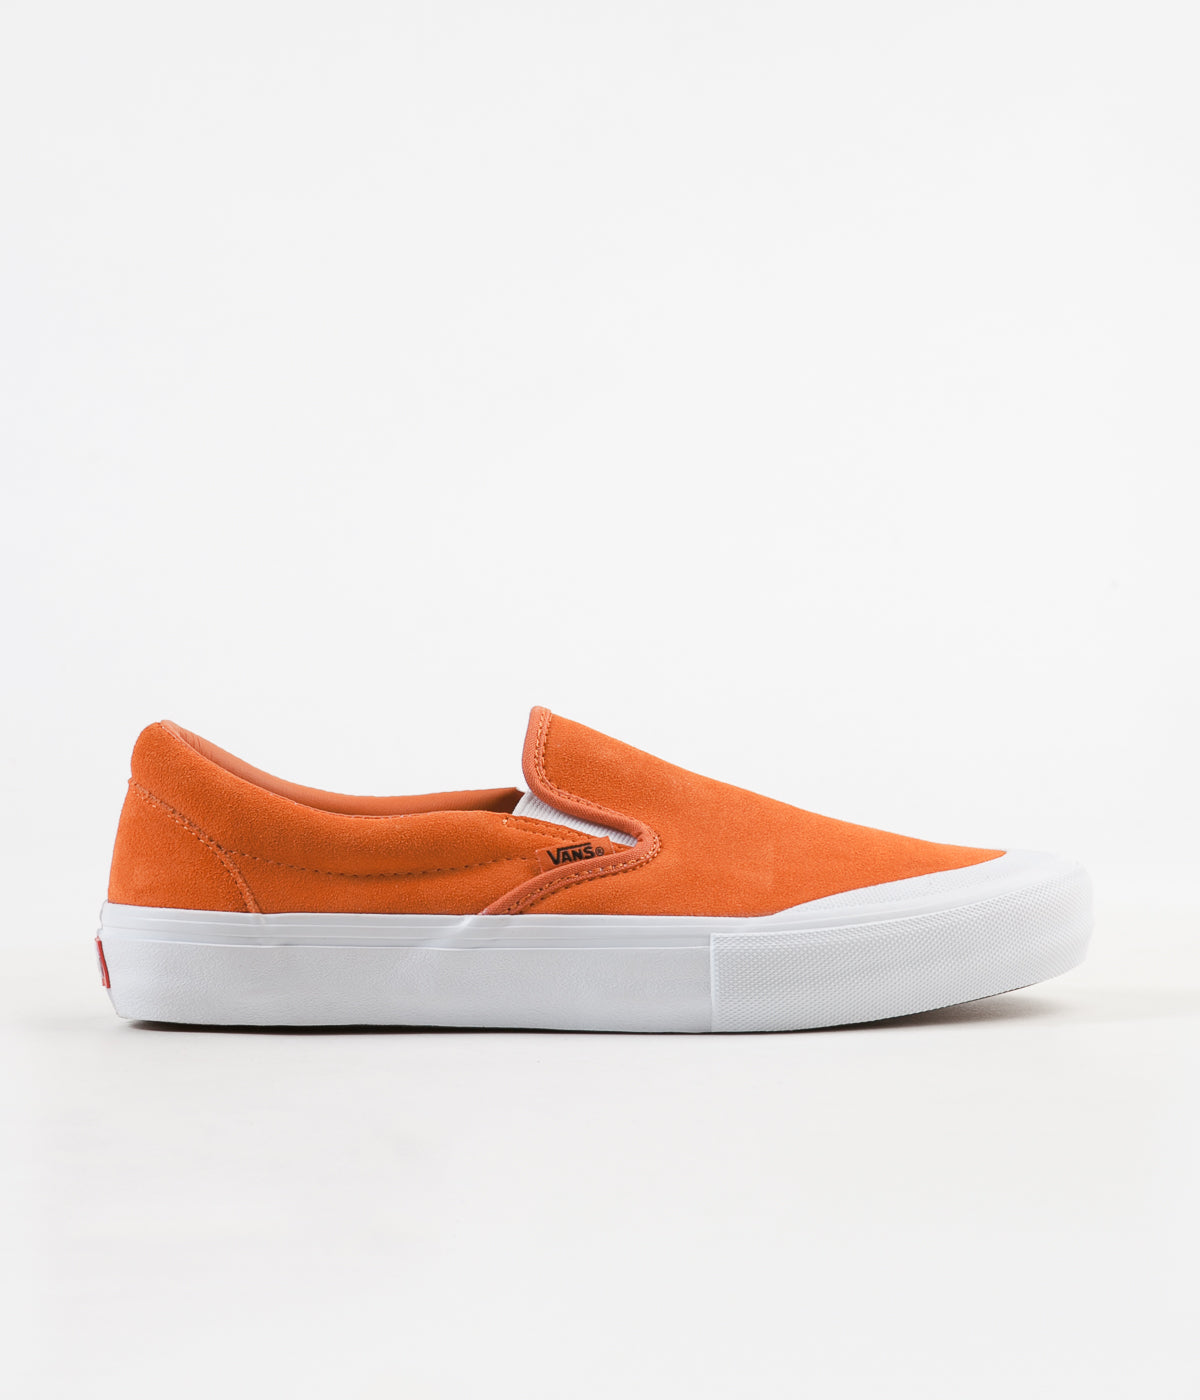 Vans Slip-On Pro Shoes - Koi / True White | Flatspot